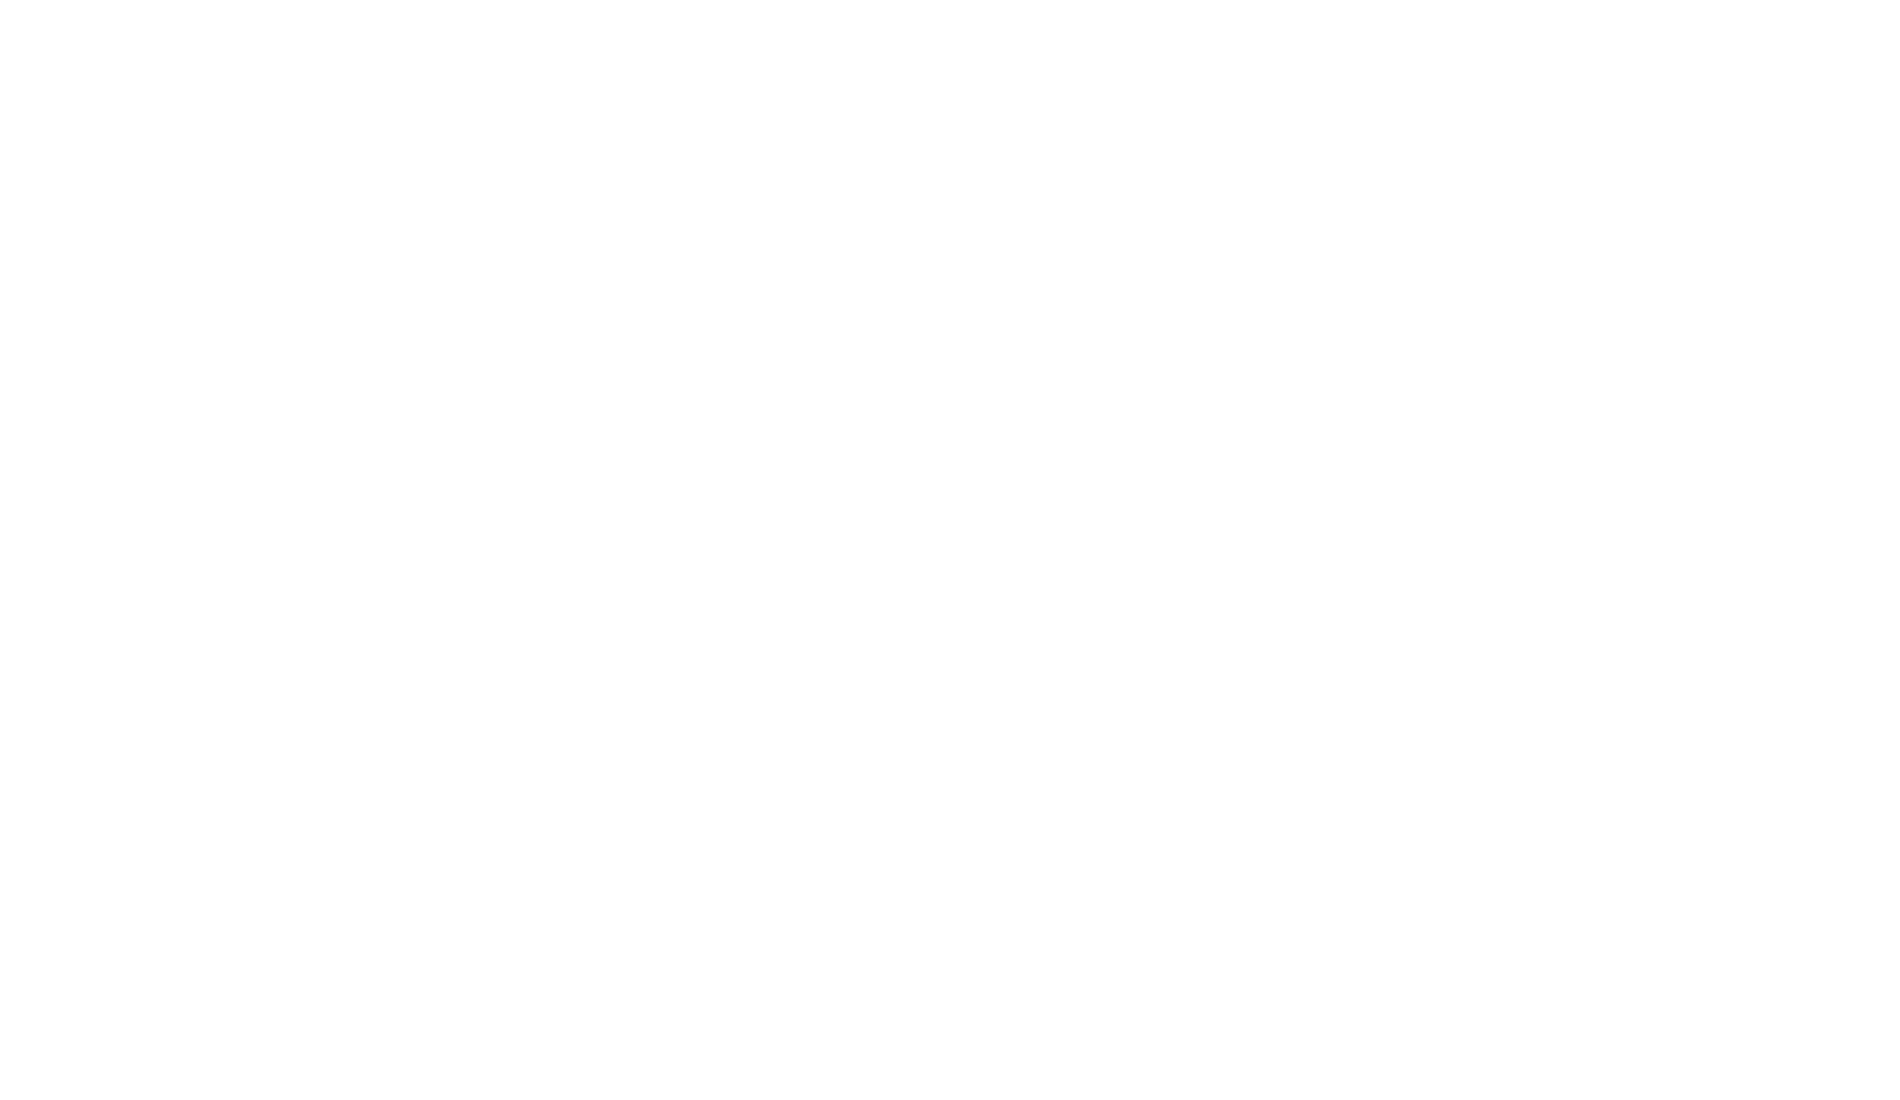 Les fabricants - logo client secours catholique